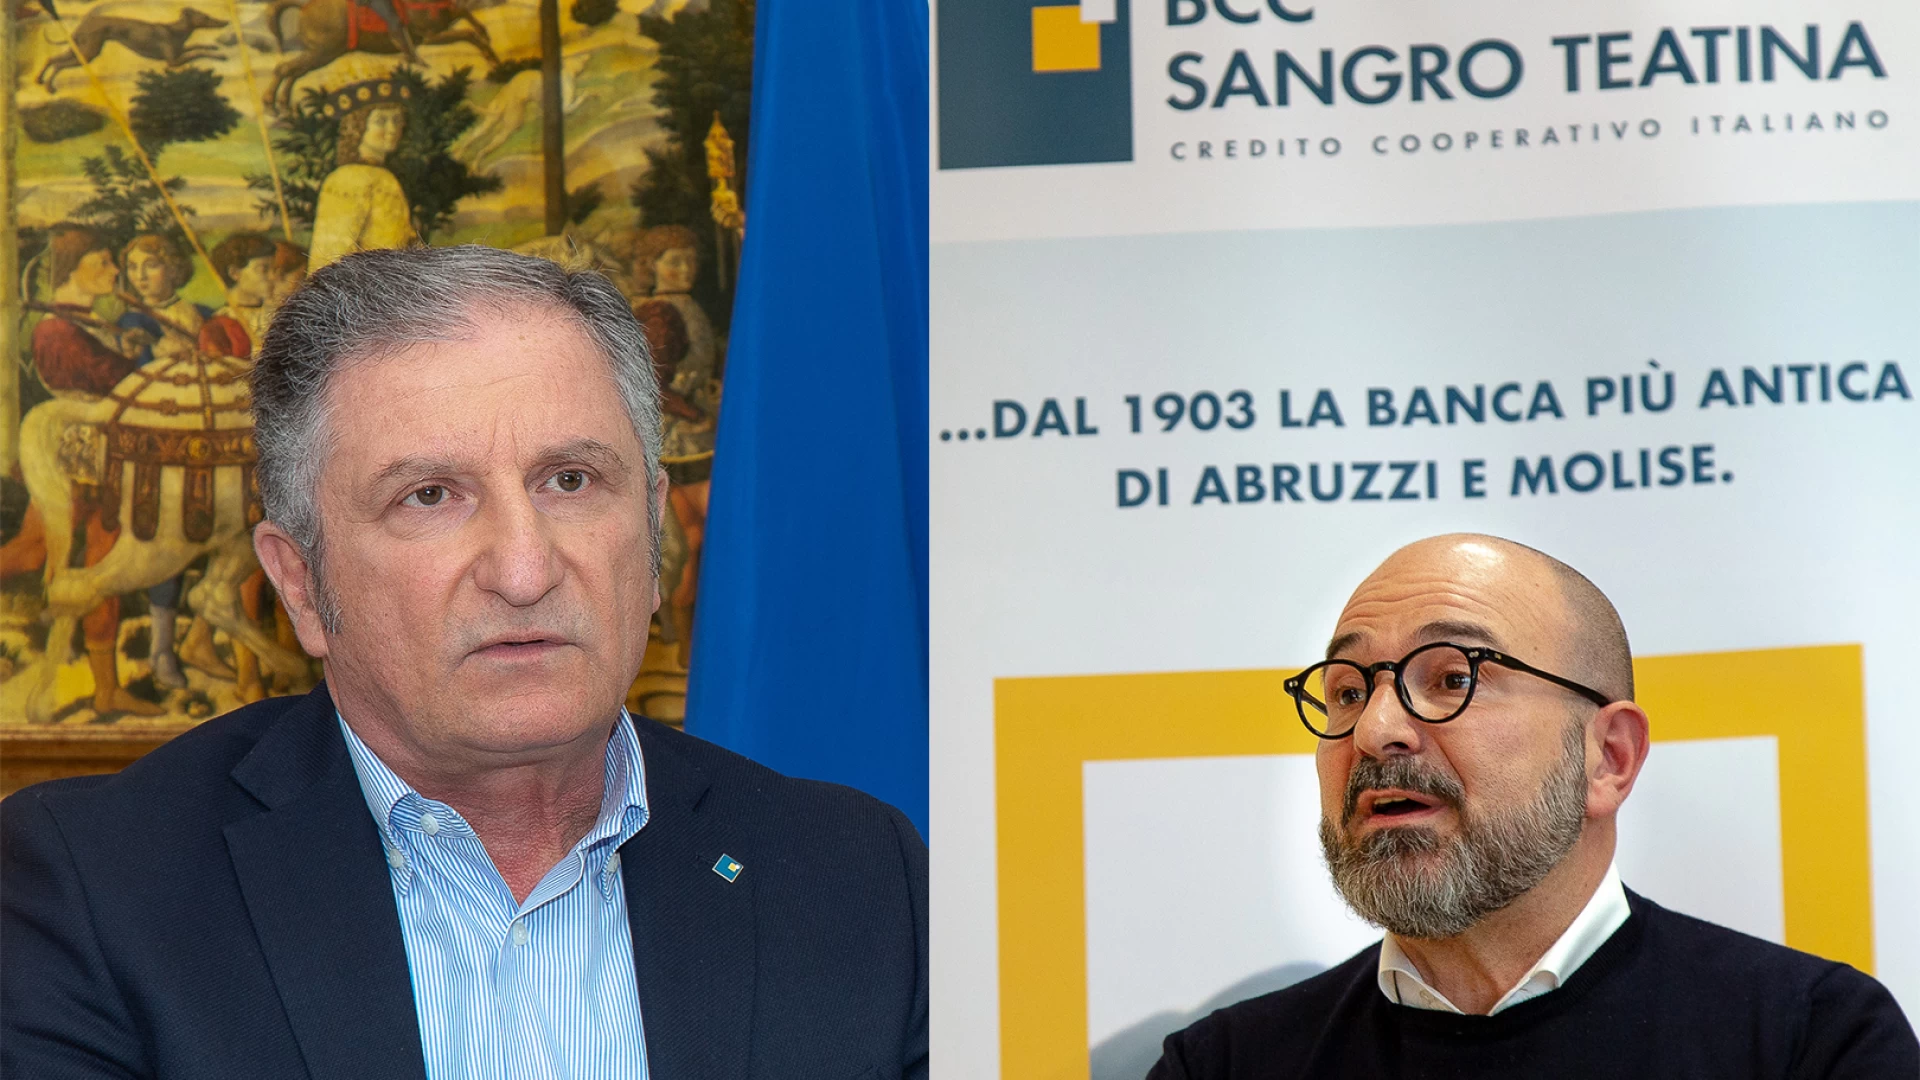 BCC Sangro Teatina, via libera al bilancio 2019. Numeri solidi per la più antica banca d’Abruzzo e Molise